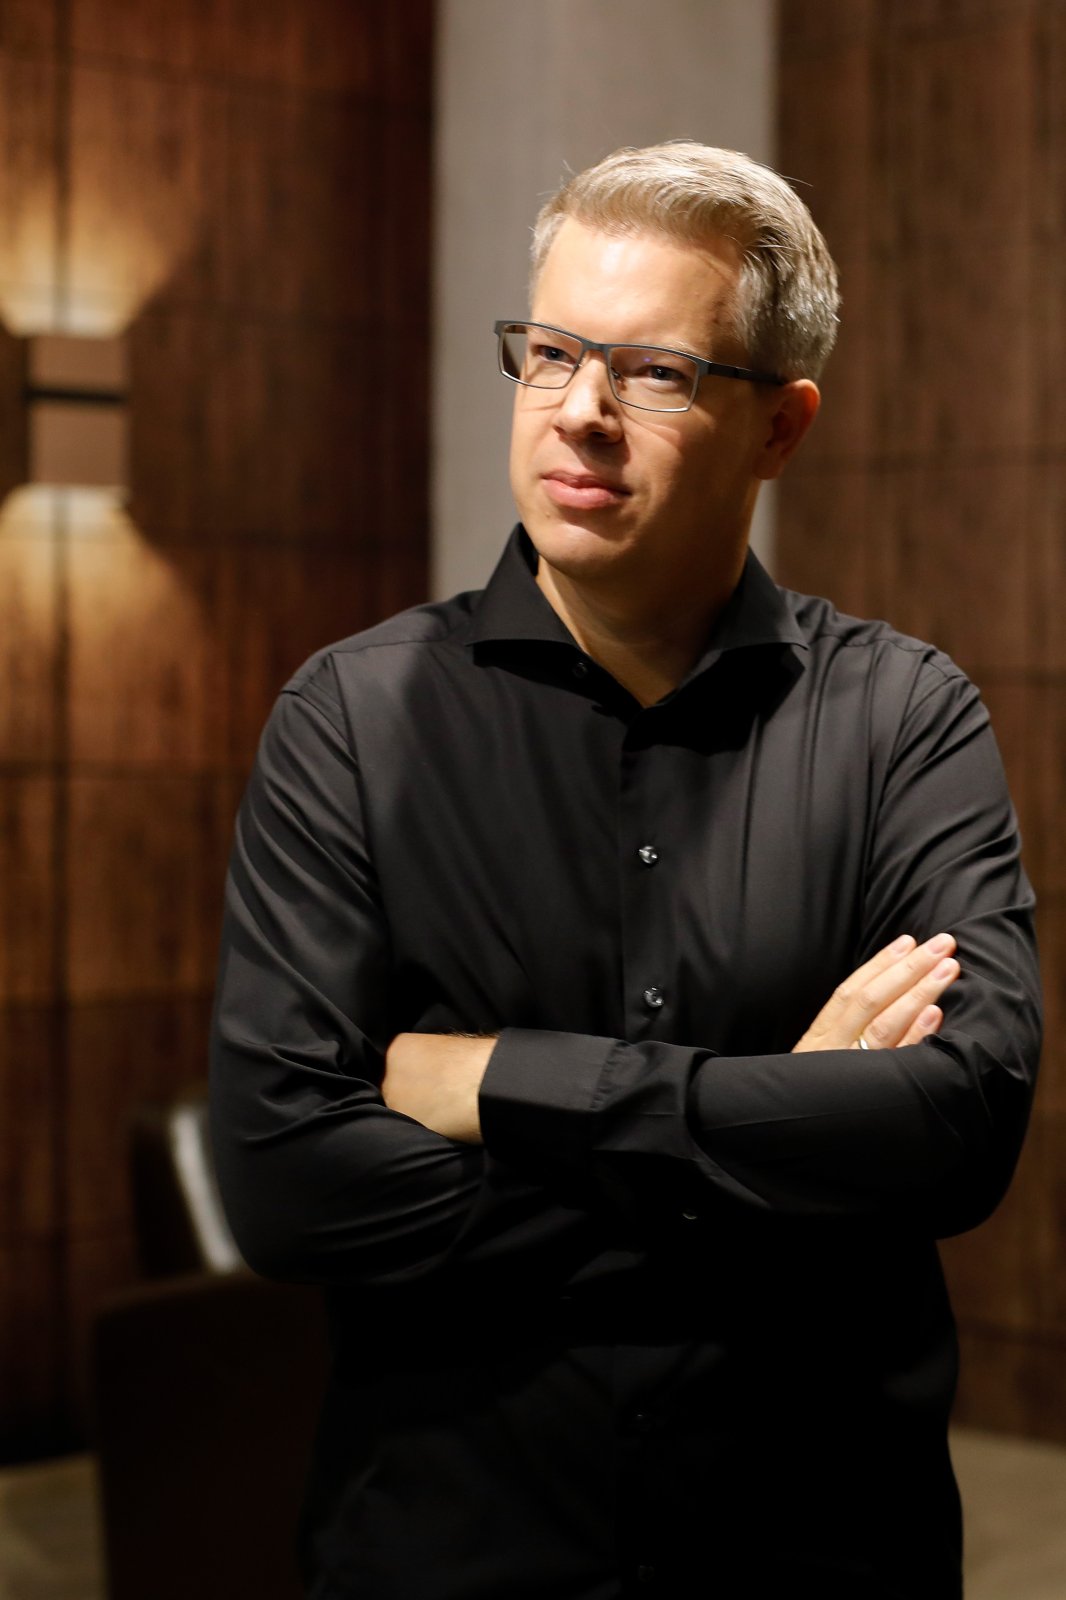 Frank Thelen ist Juror in der Start-up-TV-Show "Die Höhle der Löwen".